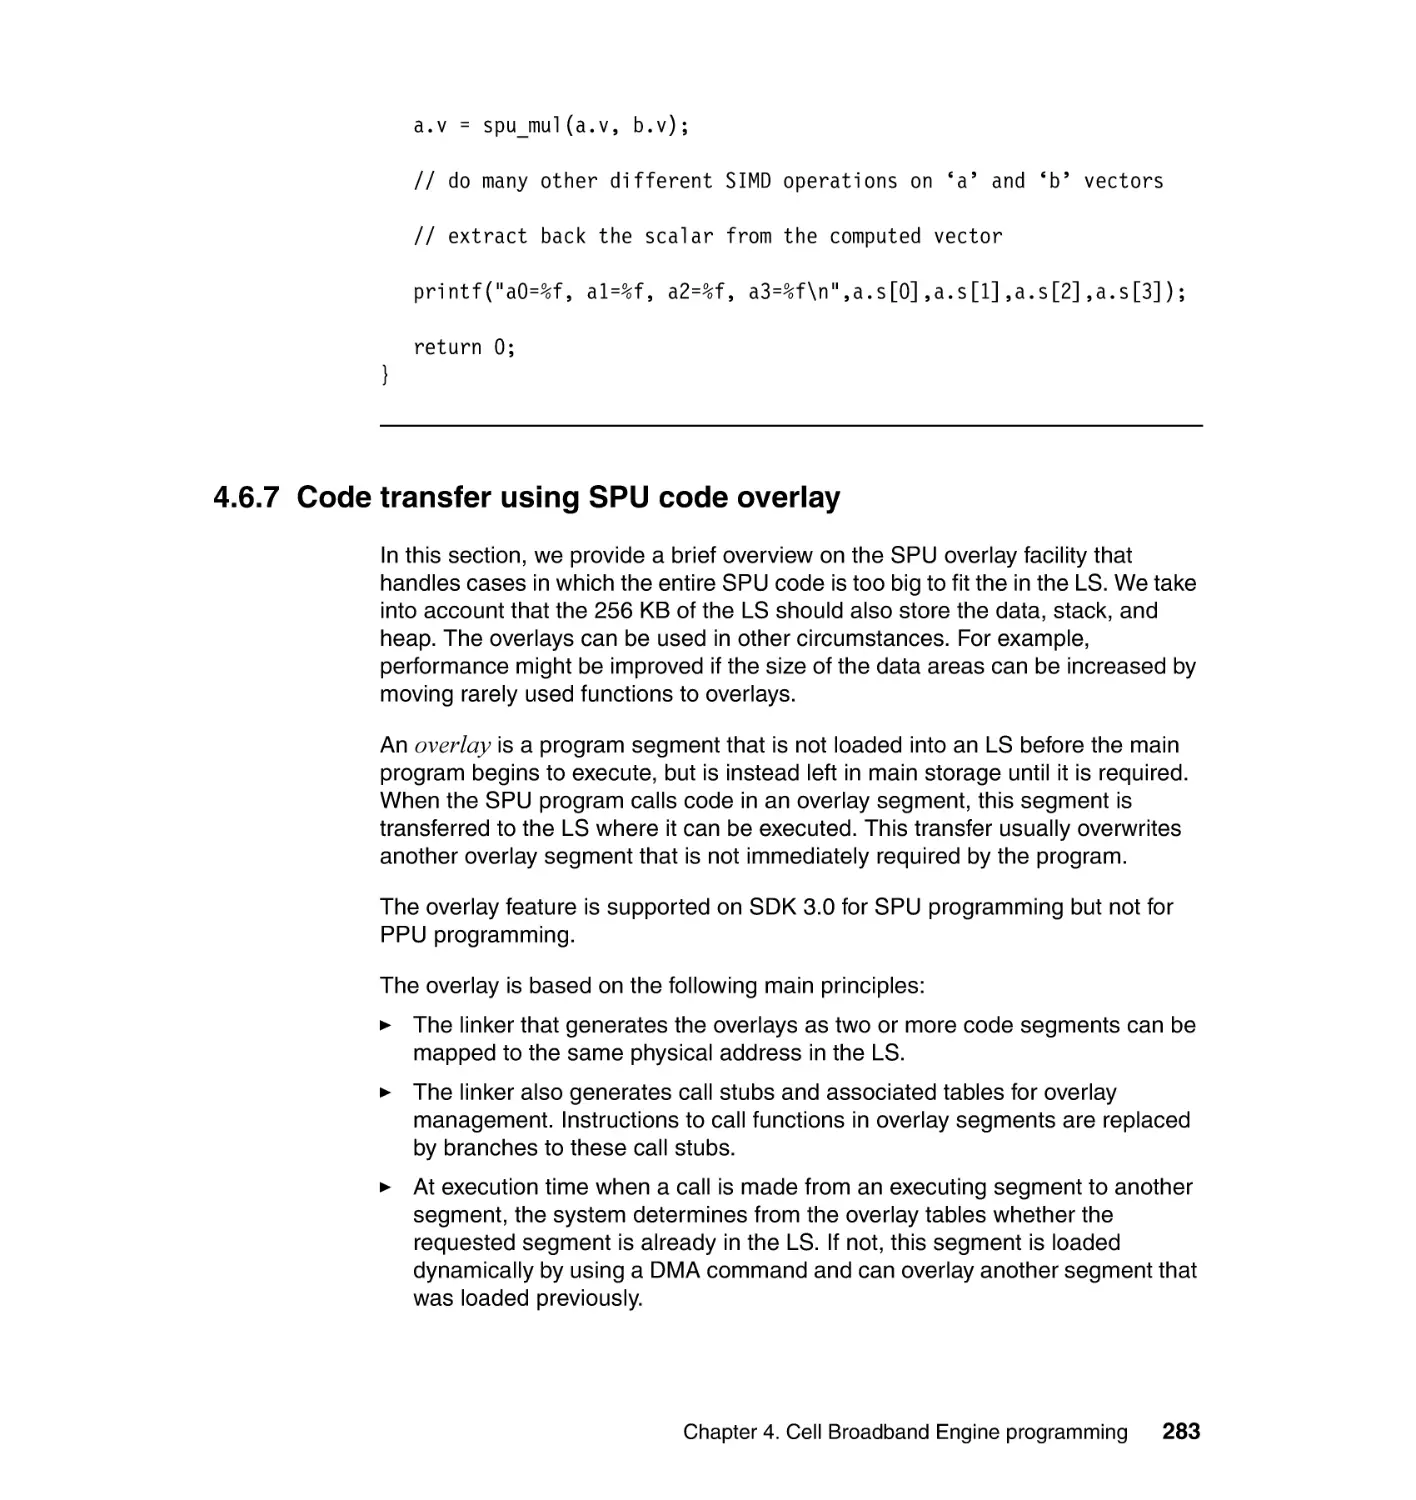 4.6.7 Code transfer using SPU code overlay